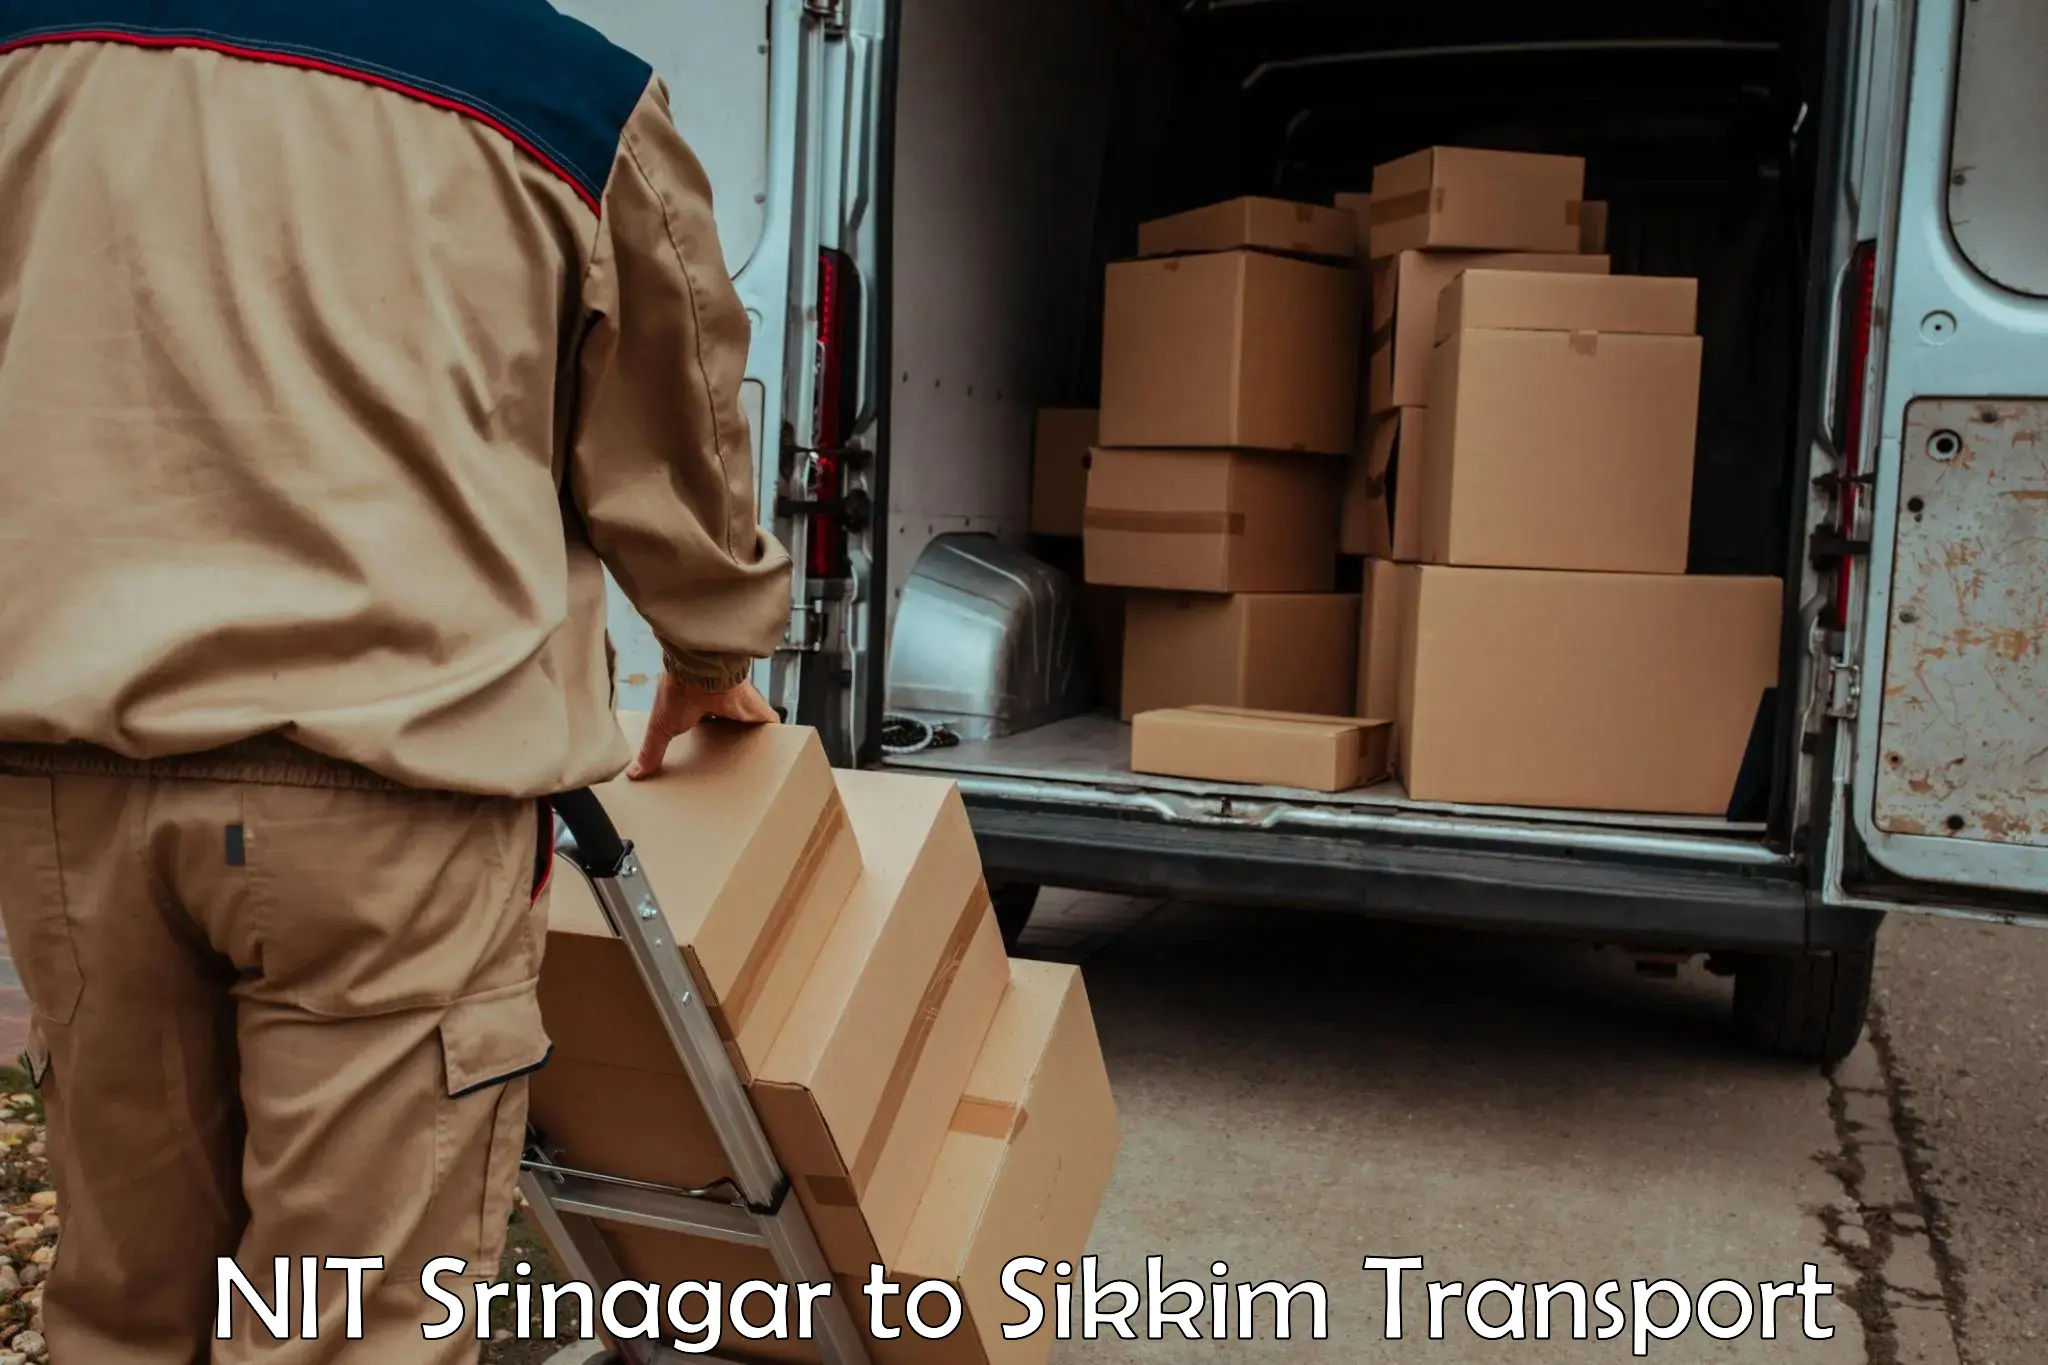 Interstate transport services NIT Srinagar to Sikkim